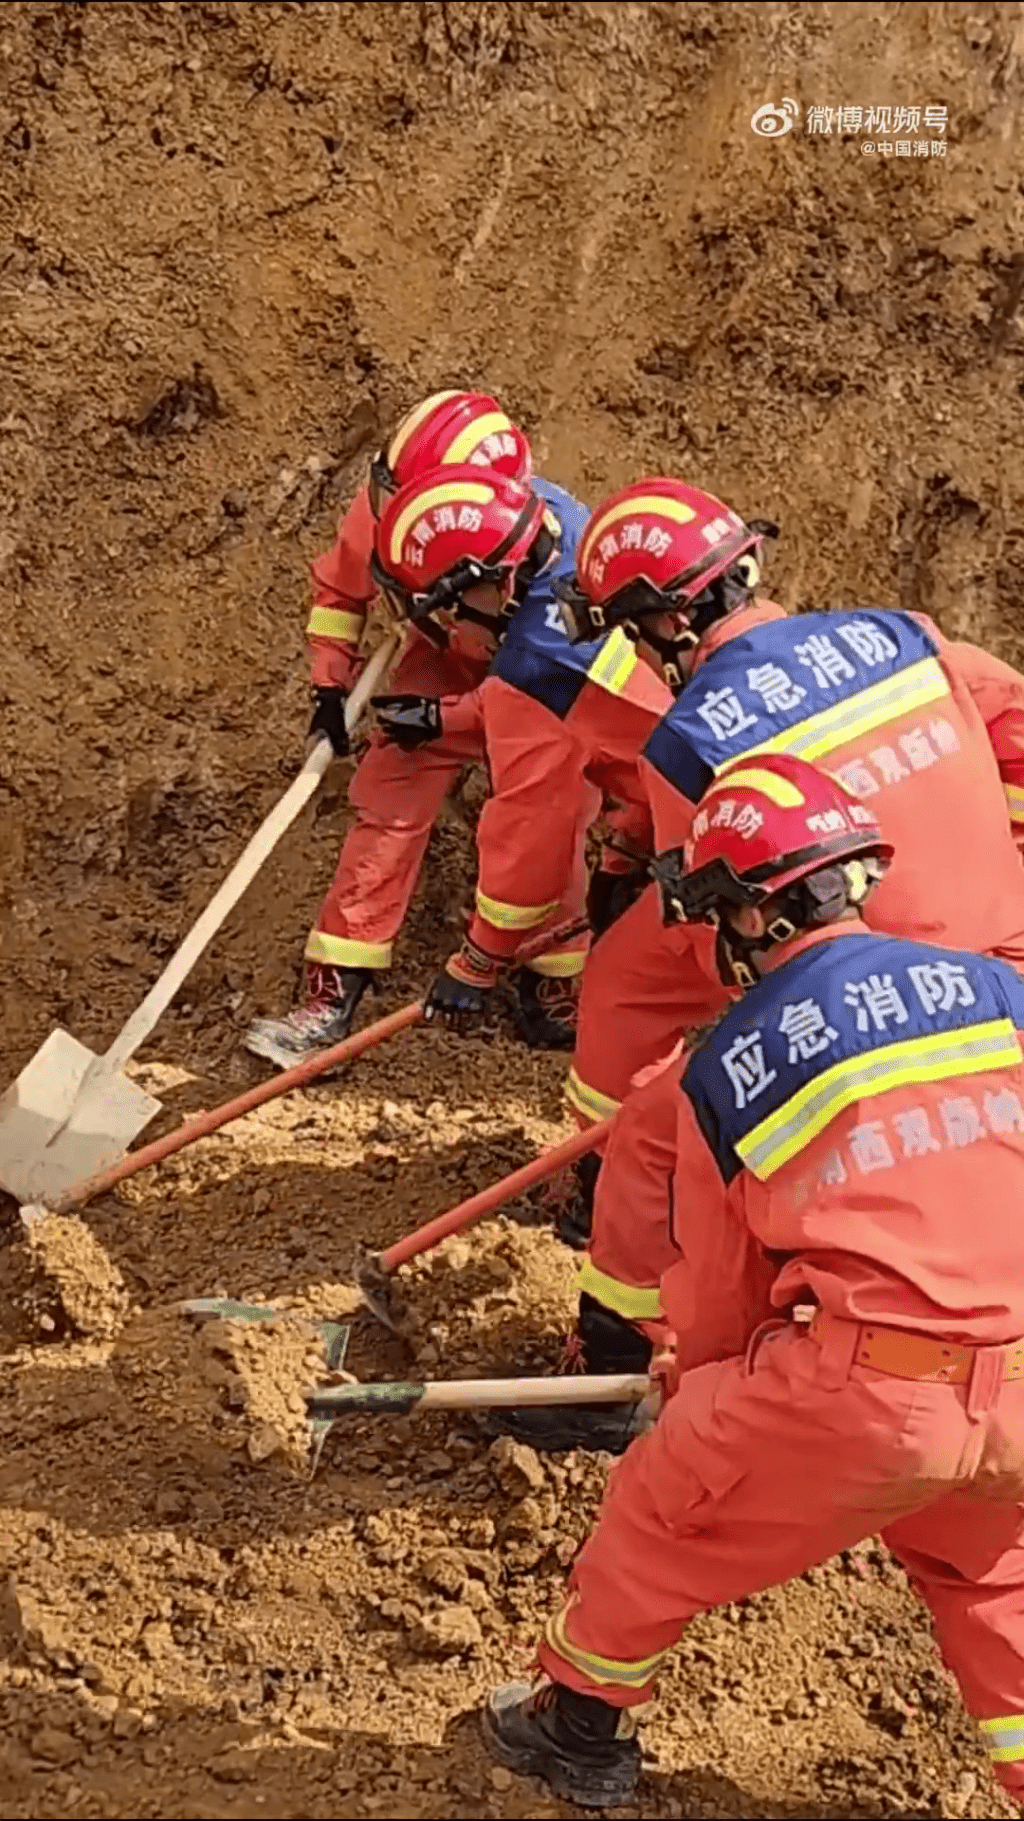 消防员抢救被困人士。 中国消防